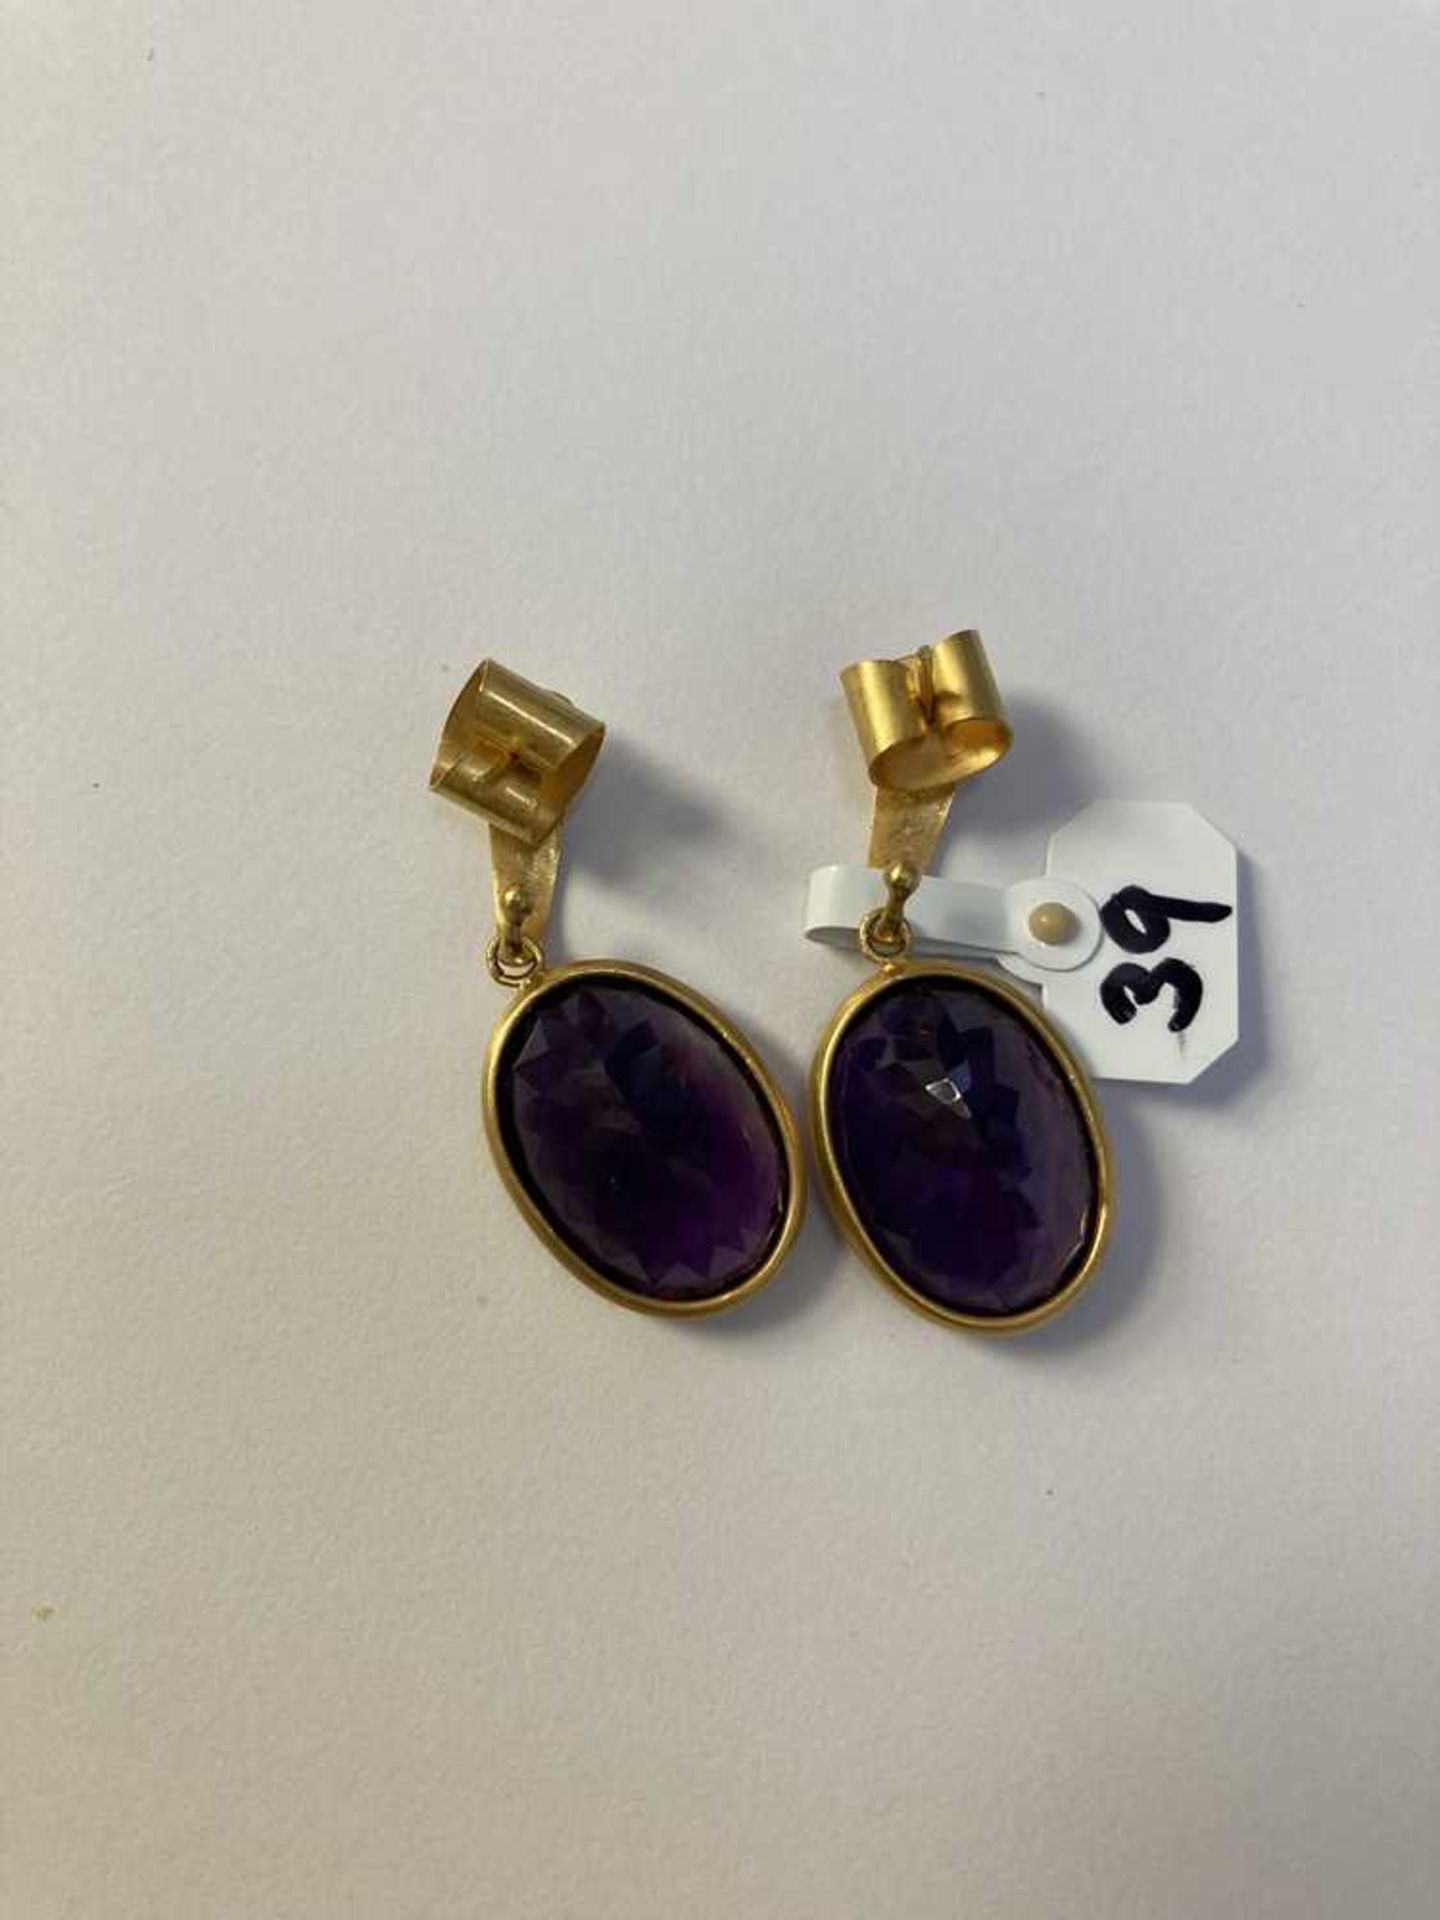 A pair of amethyst earrings - Image 3 of 3